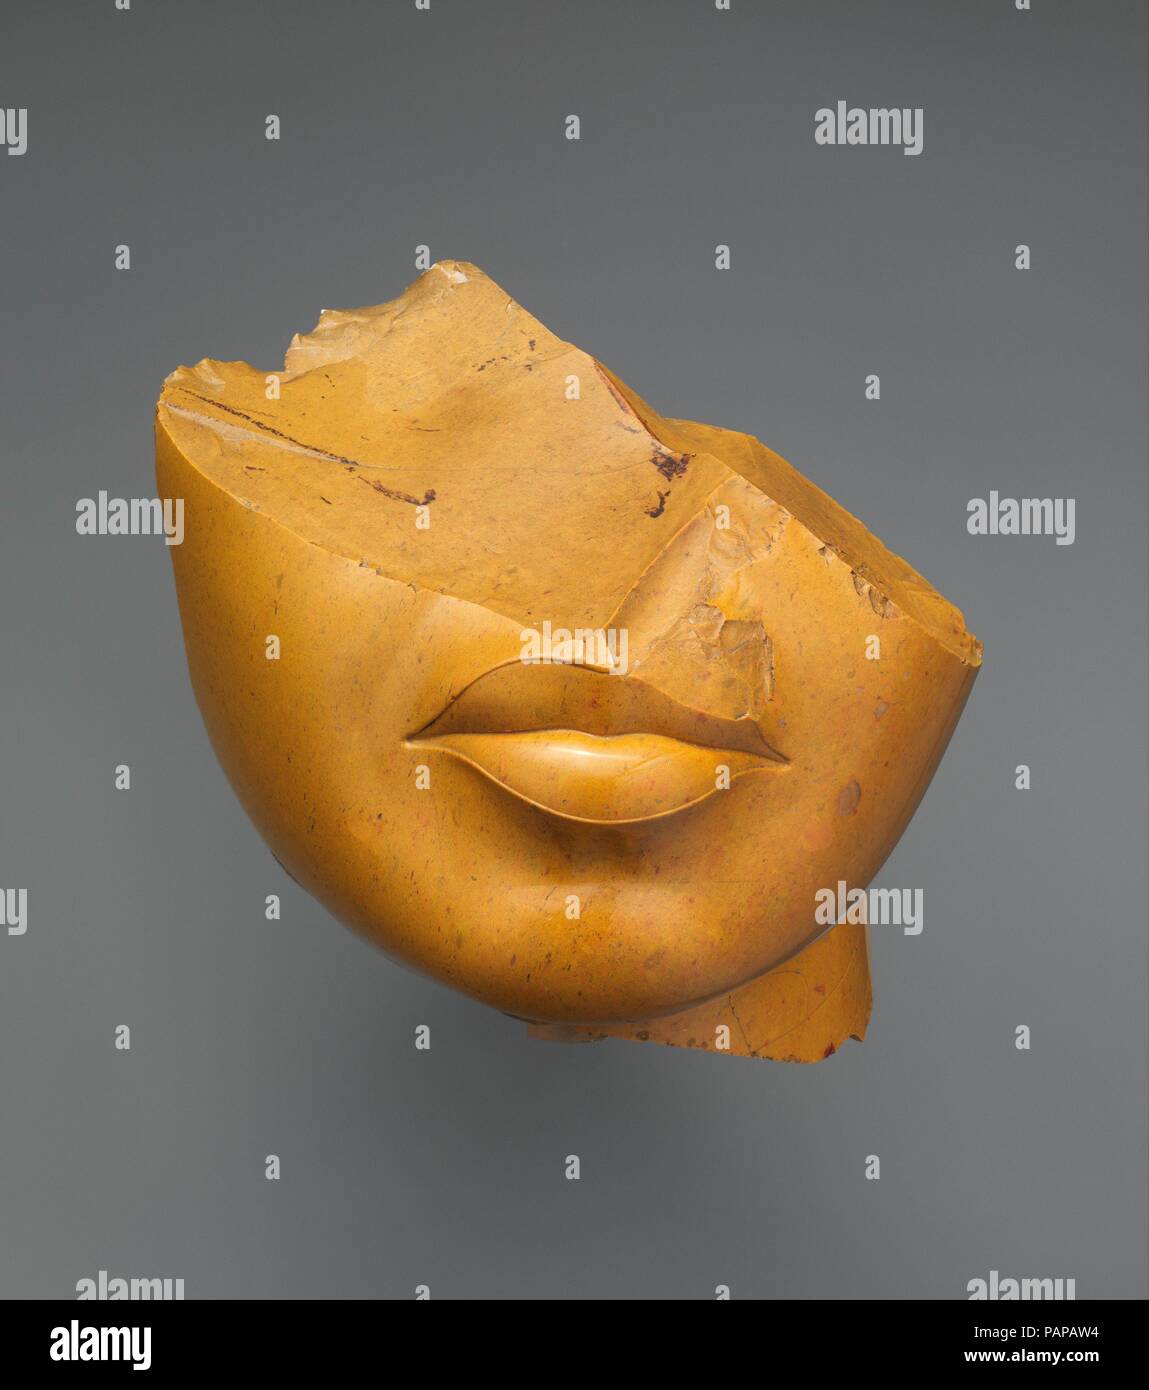 Fragment des Queen's Gesicht. Abmessungen: h. 13 cm (5 1/8 in.); w. 12,5 cm (4 15/16 in.); d. 12,5 cm (4 15/16 in.). Dynastie: Dynasty 18. Herrschaft: Herrschaft von Echnaton. Datum: Ca. 1353-1336 v. Chr.. Dieses eindrucksvolle Fragment wird von einer Statue aus verschiedenen Materialien. Die Rückseite des Stück zeigt Reste der verzapfen, die auf einem Zapfen, die vom Körper der Statue, die von Ägyptischer alabaster vorgenommen wurden. Ein weißes Kleid zu repräsentieren. Zwei Kopfbedeckungen könnte diesen Kopf haben: Das Kat-Kopftuch, oder der nubischen Perücke (wie auf der canopic jar Deckel gesehen, 30.8.54, in der gleichen Galerie). Die Royal Stockfoto